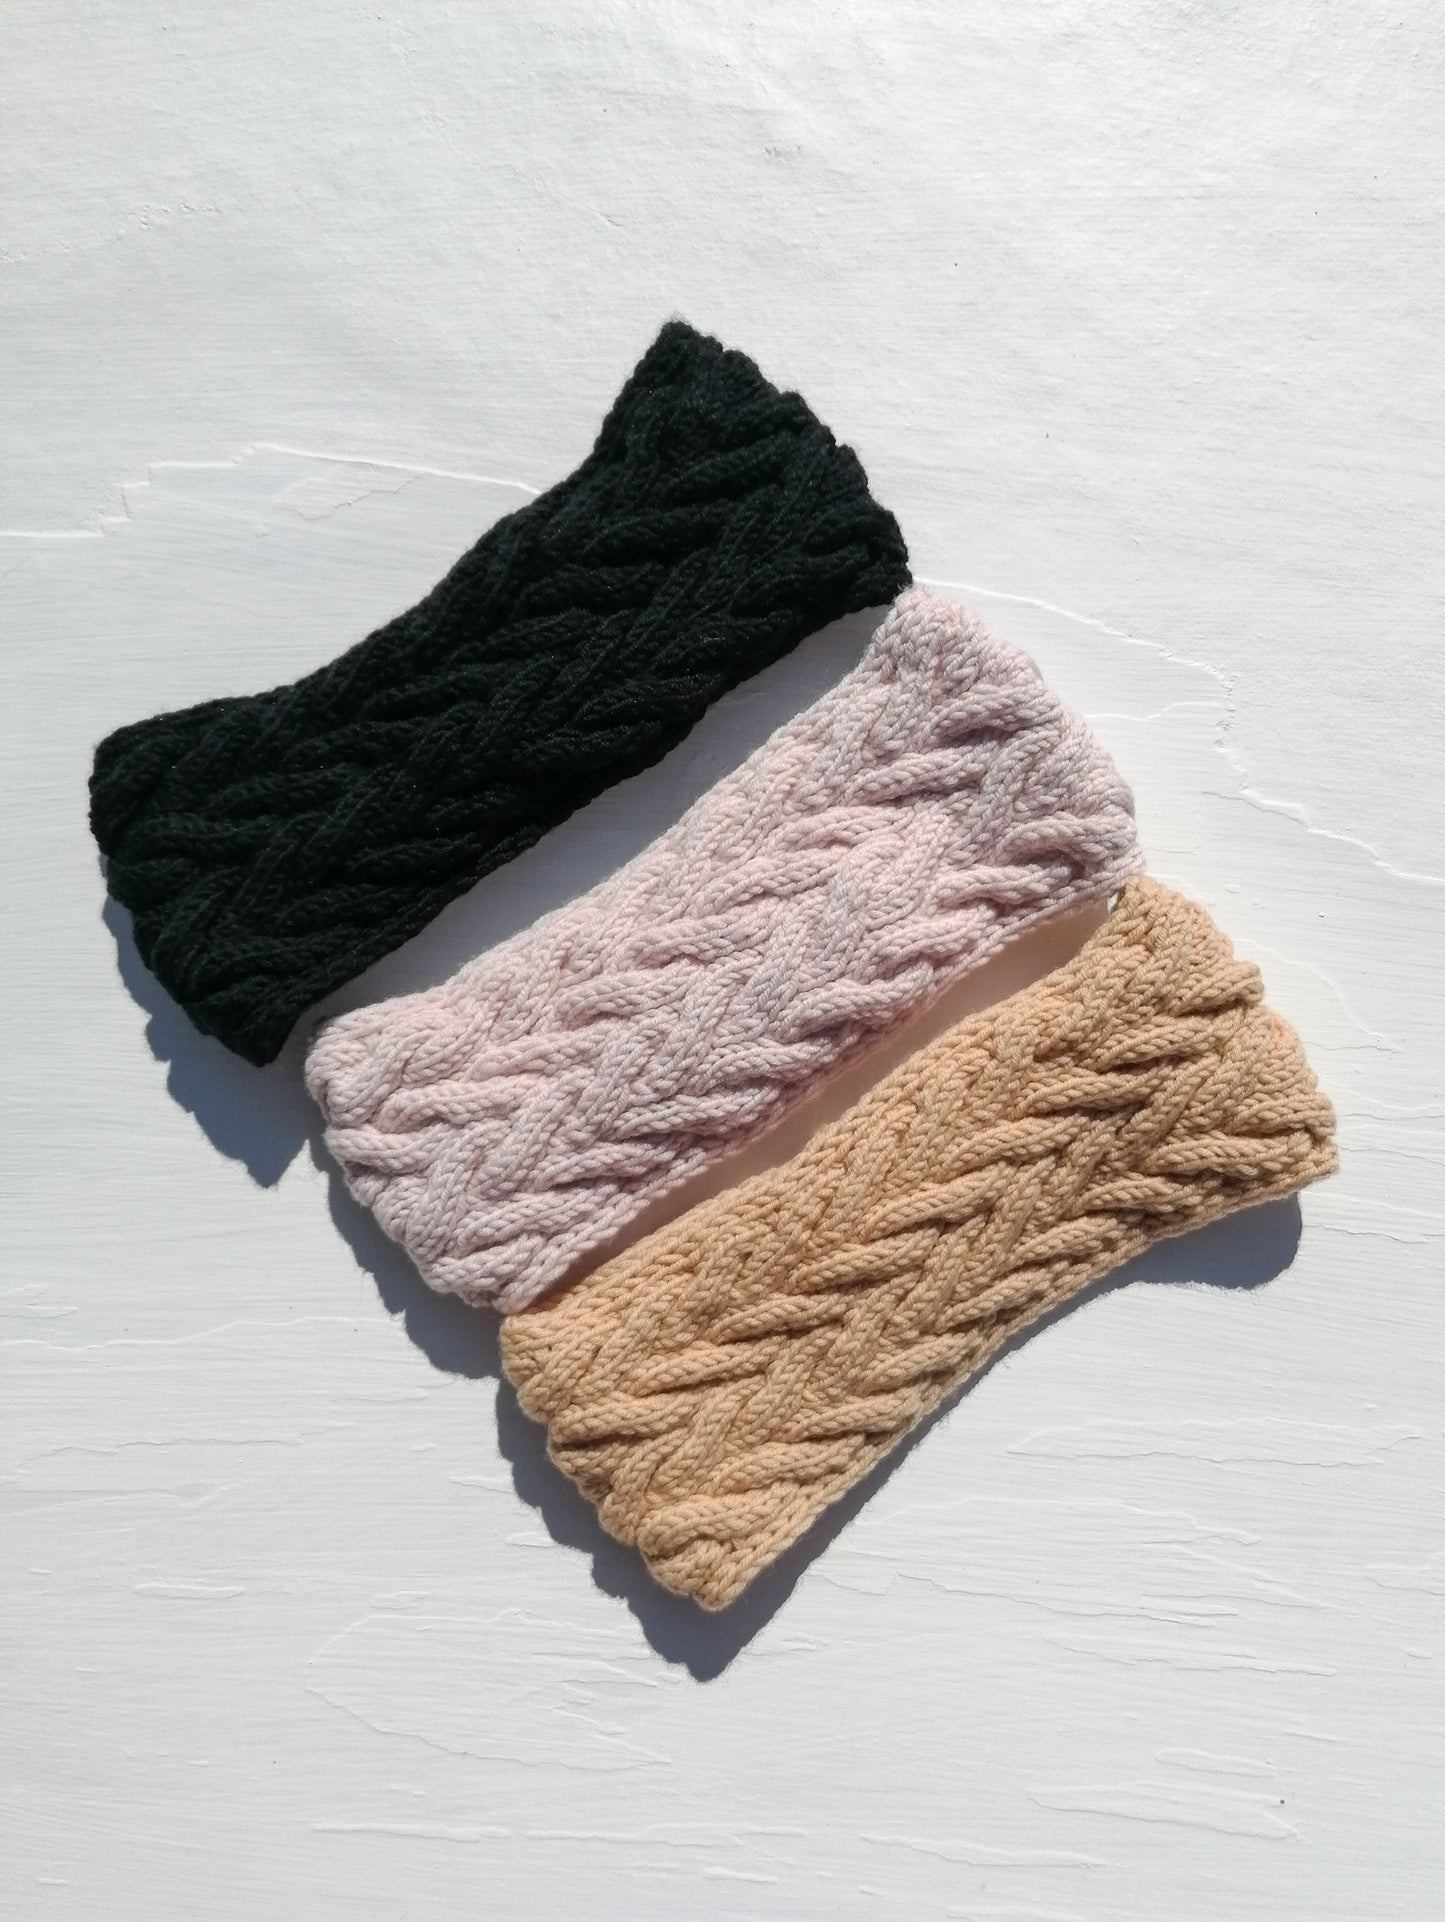 Knitted wool headband - beige